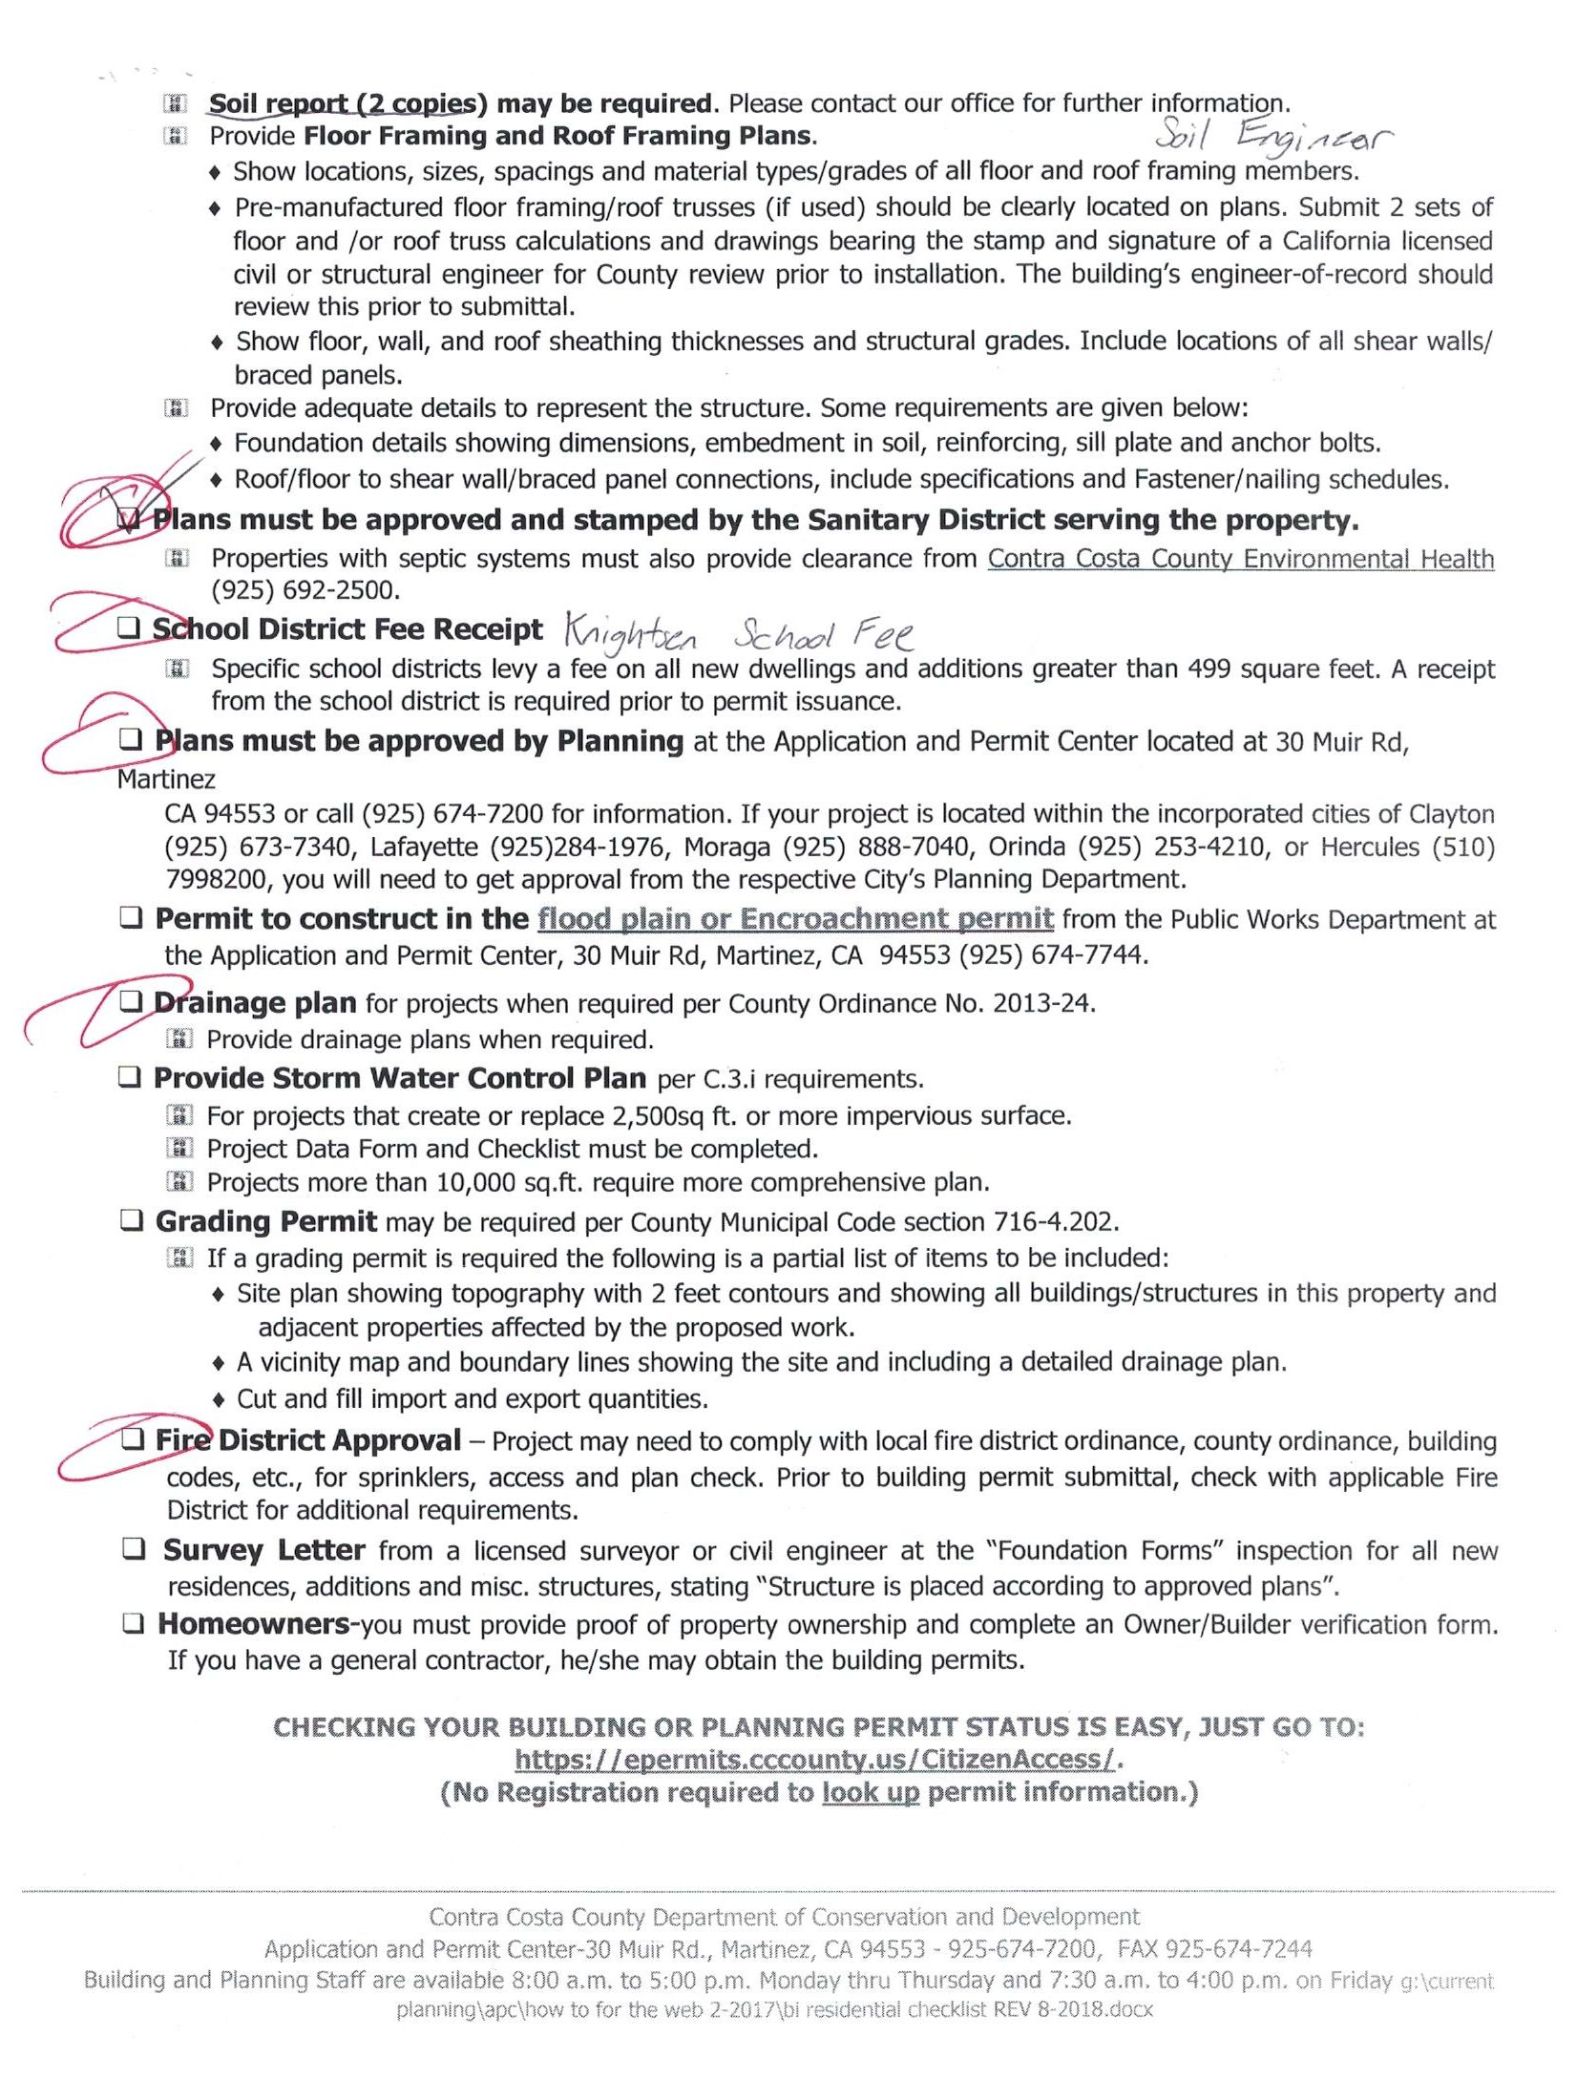 Contra Costa Building Permit Checklist Page 2